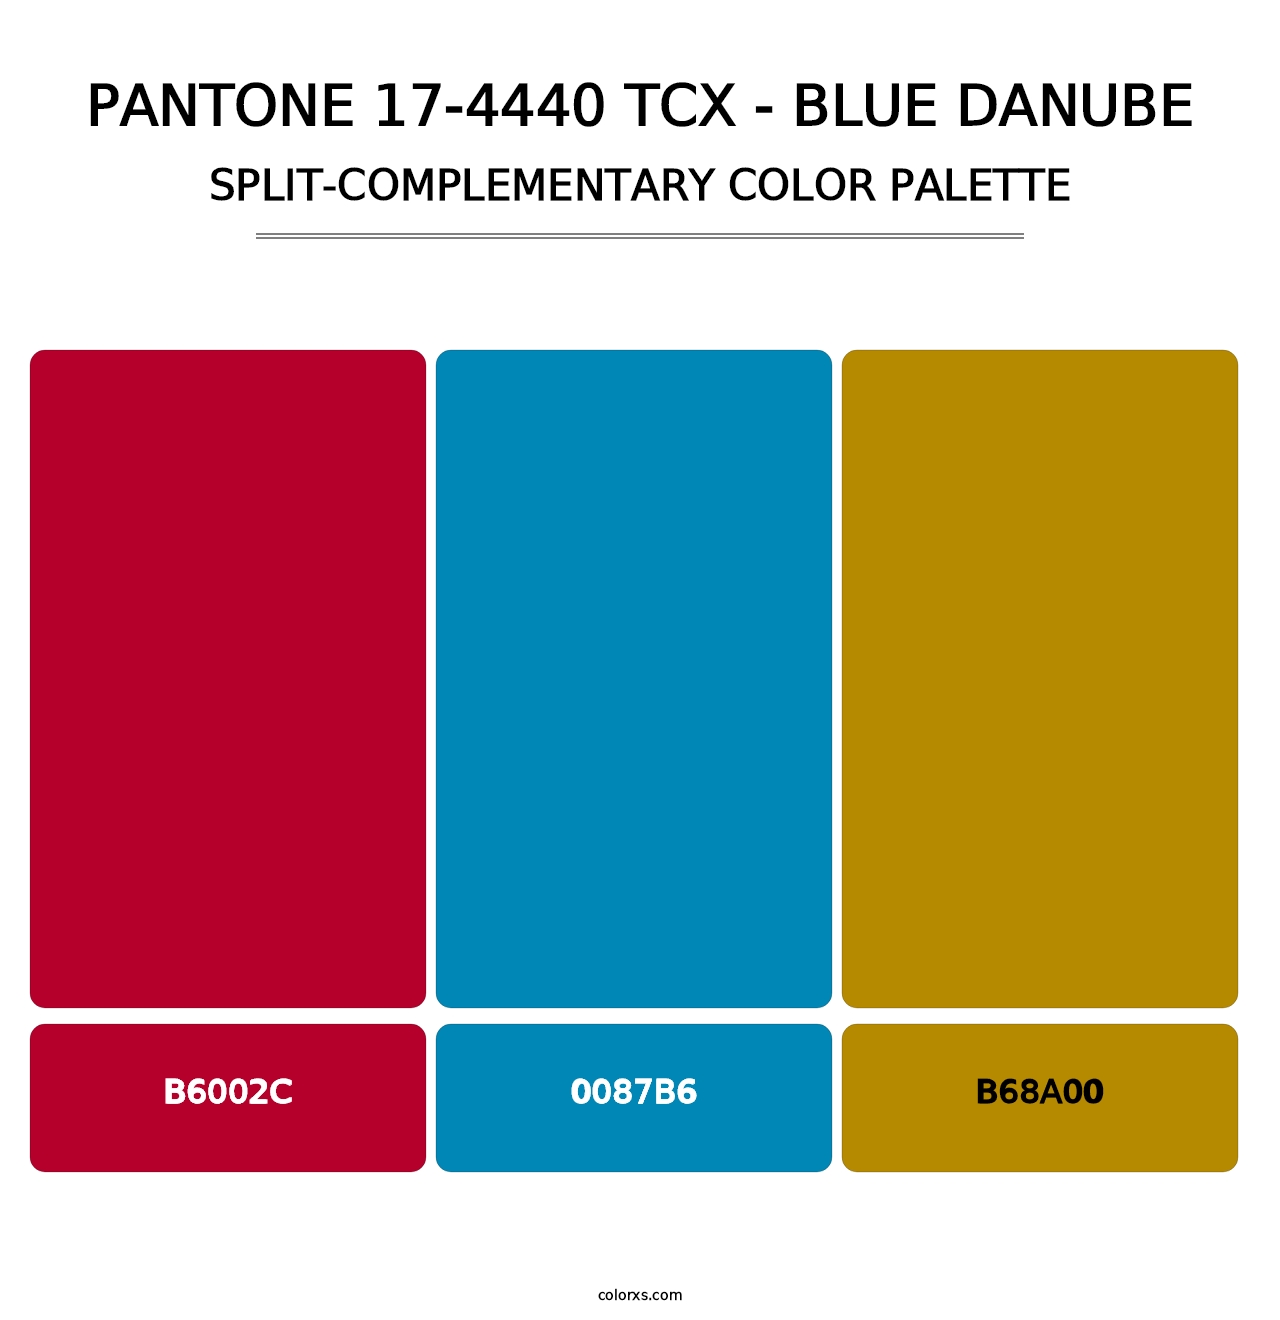 PANTONE 17-4440 TCX - Blue Danube - Split-Complementary Color Palette